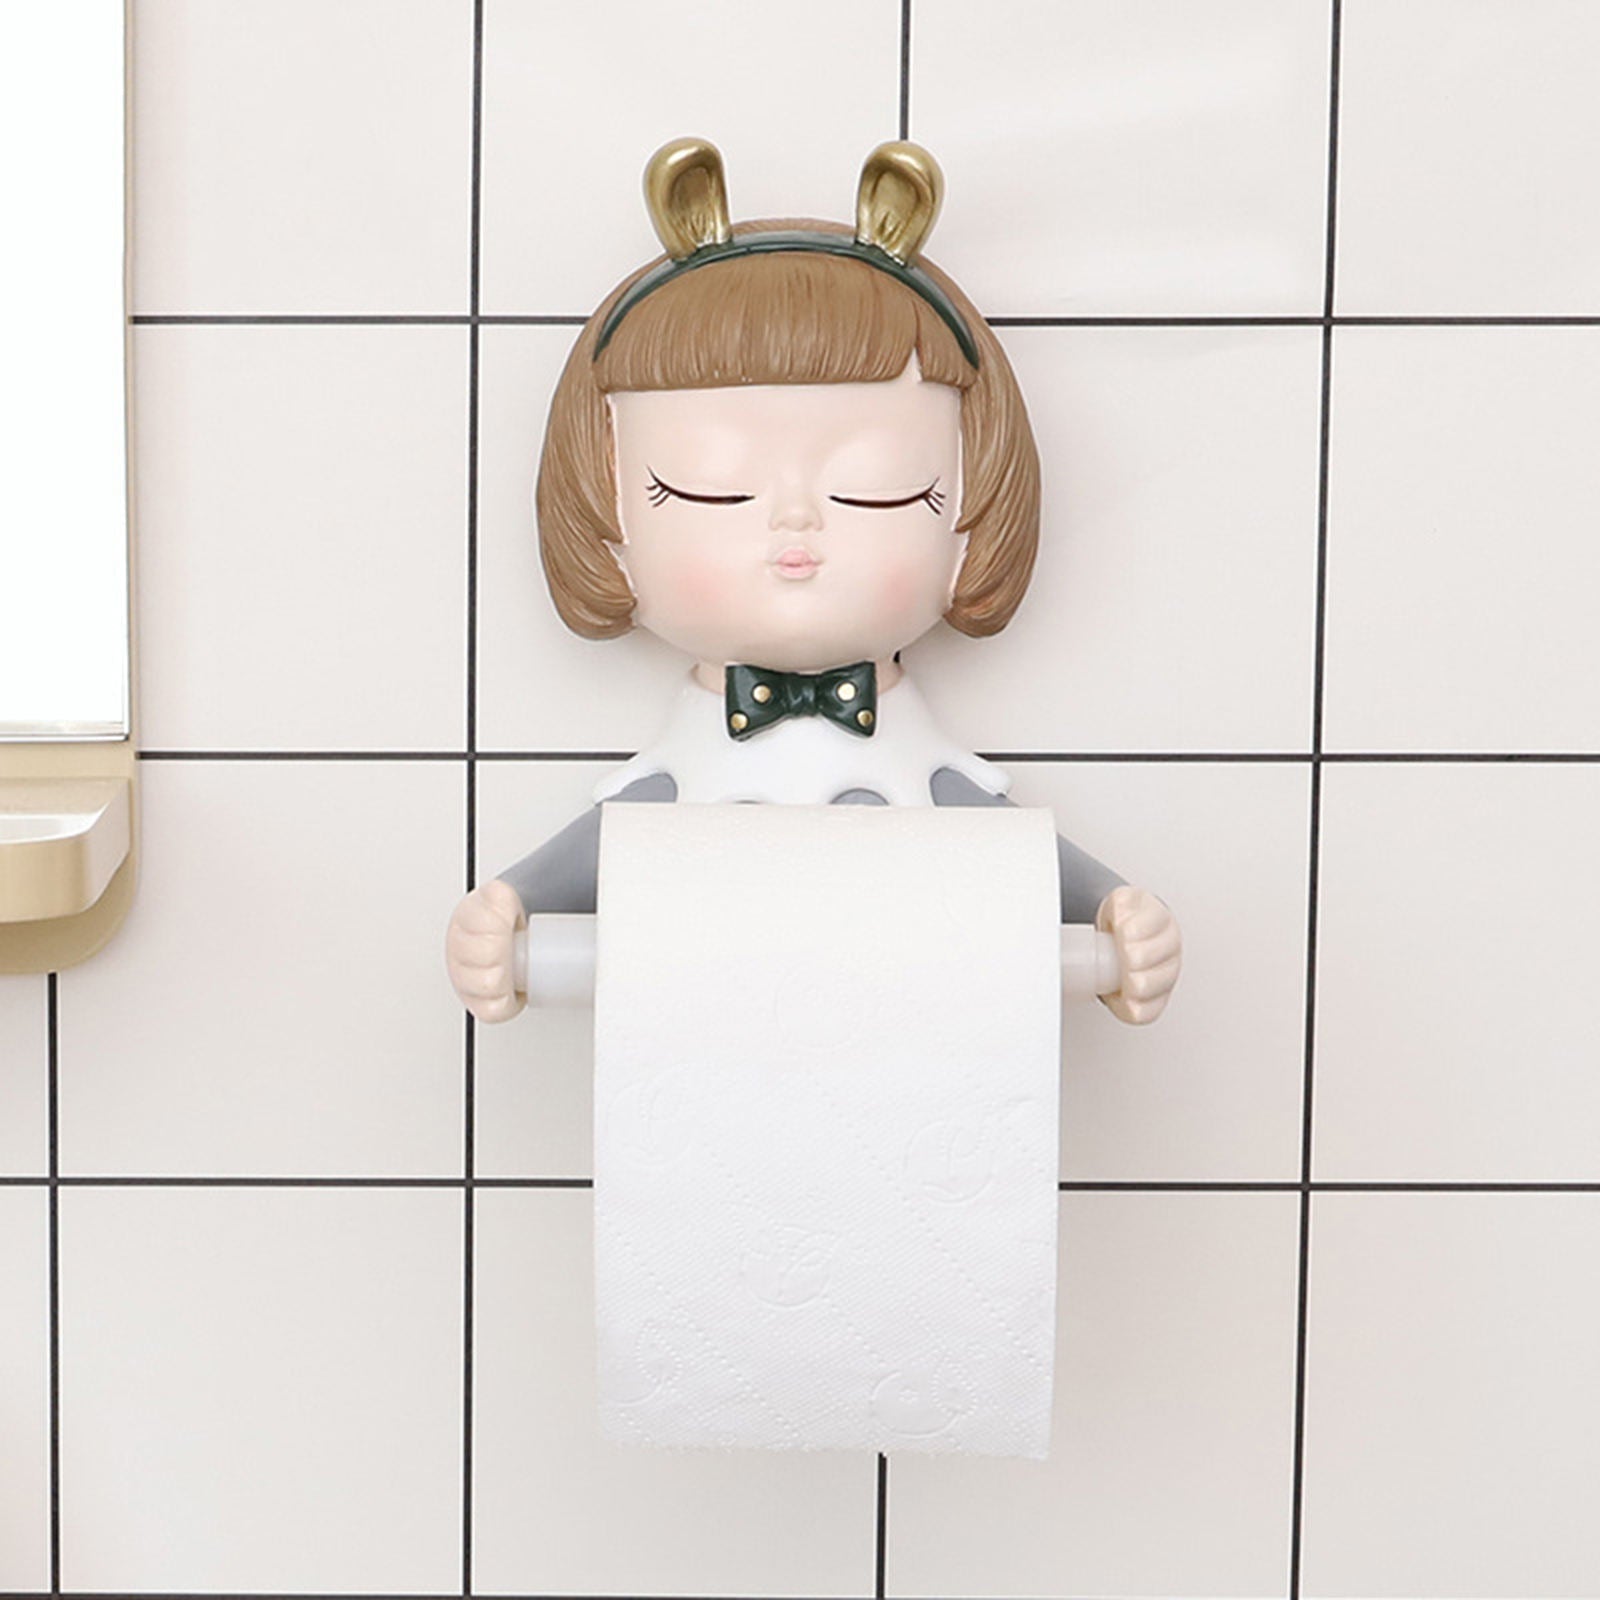 Fancy Girl Toilet Paper Roll Holder